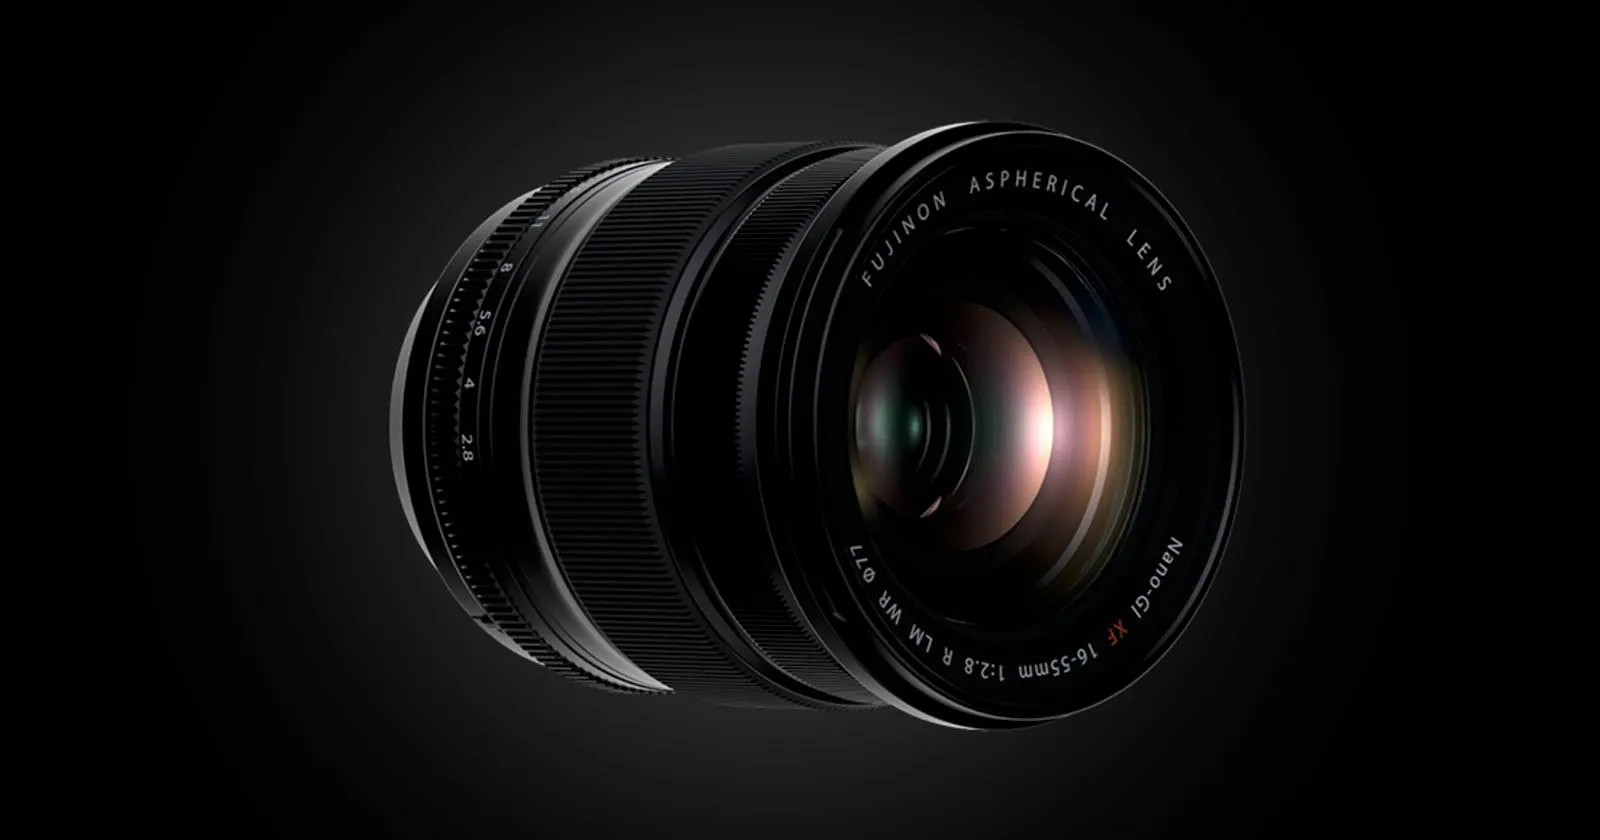 Bản cập nhật firmware mới cho ống kính Fujifilm XF 16-55mm F2.8 đang gặp lỗi